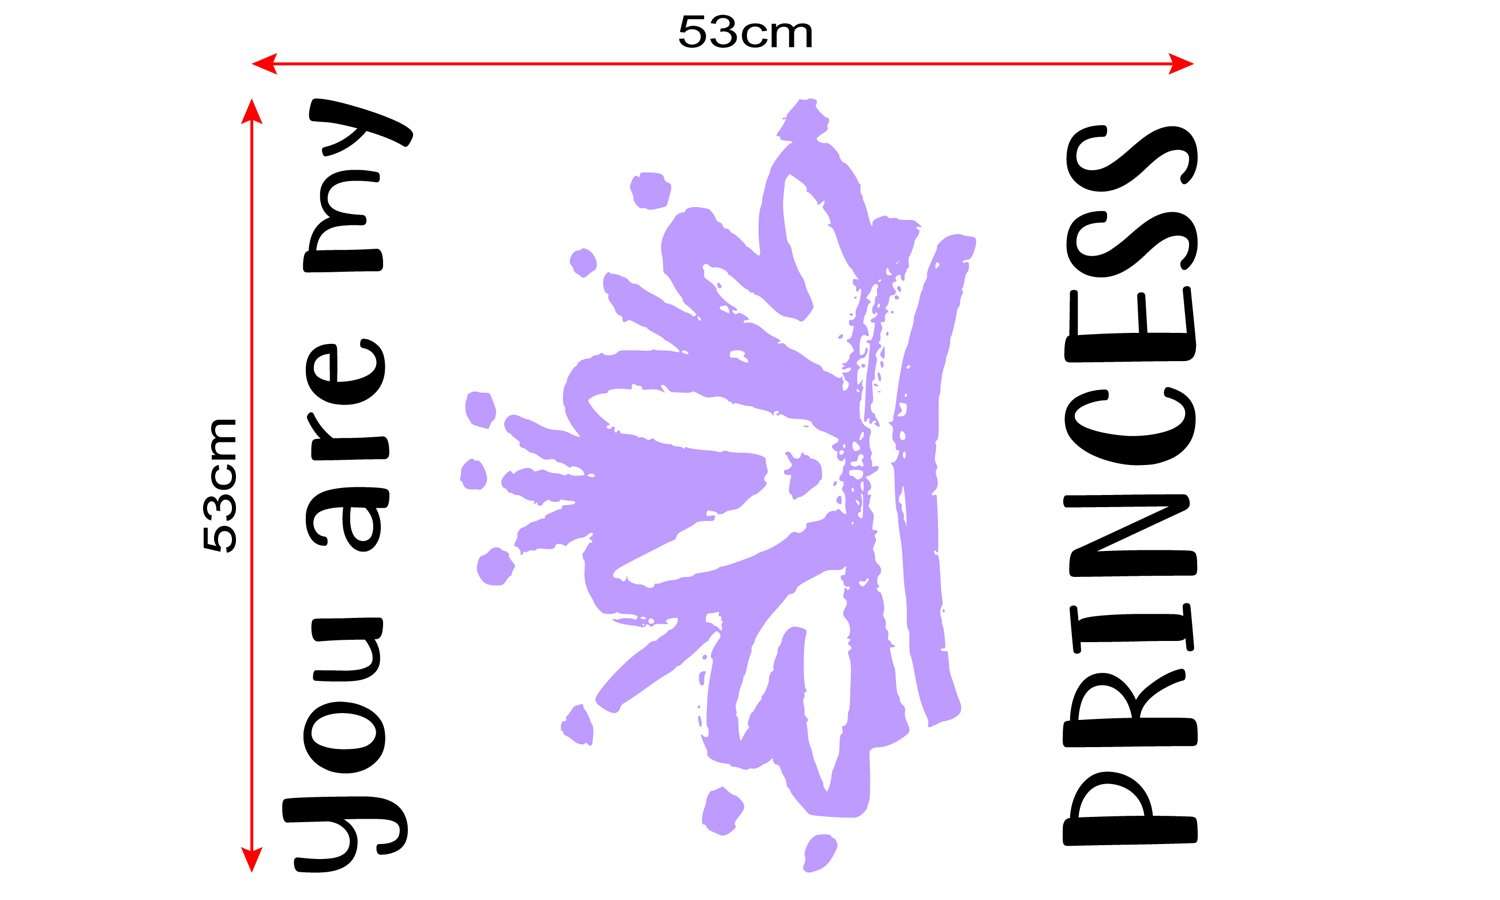 Zidni natpis You are my princess - samoljepljive naljepnice, tekst, citati, tekstualne naljepnice.